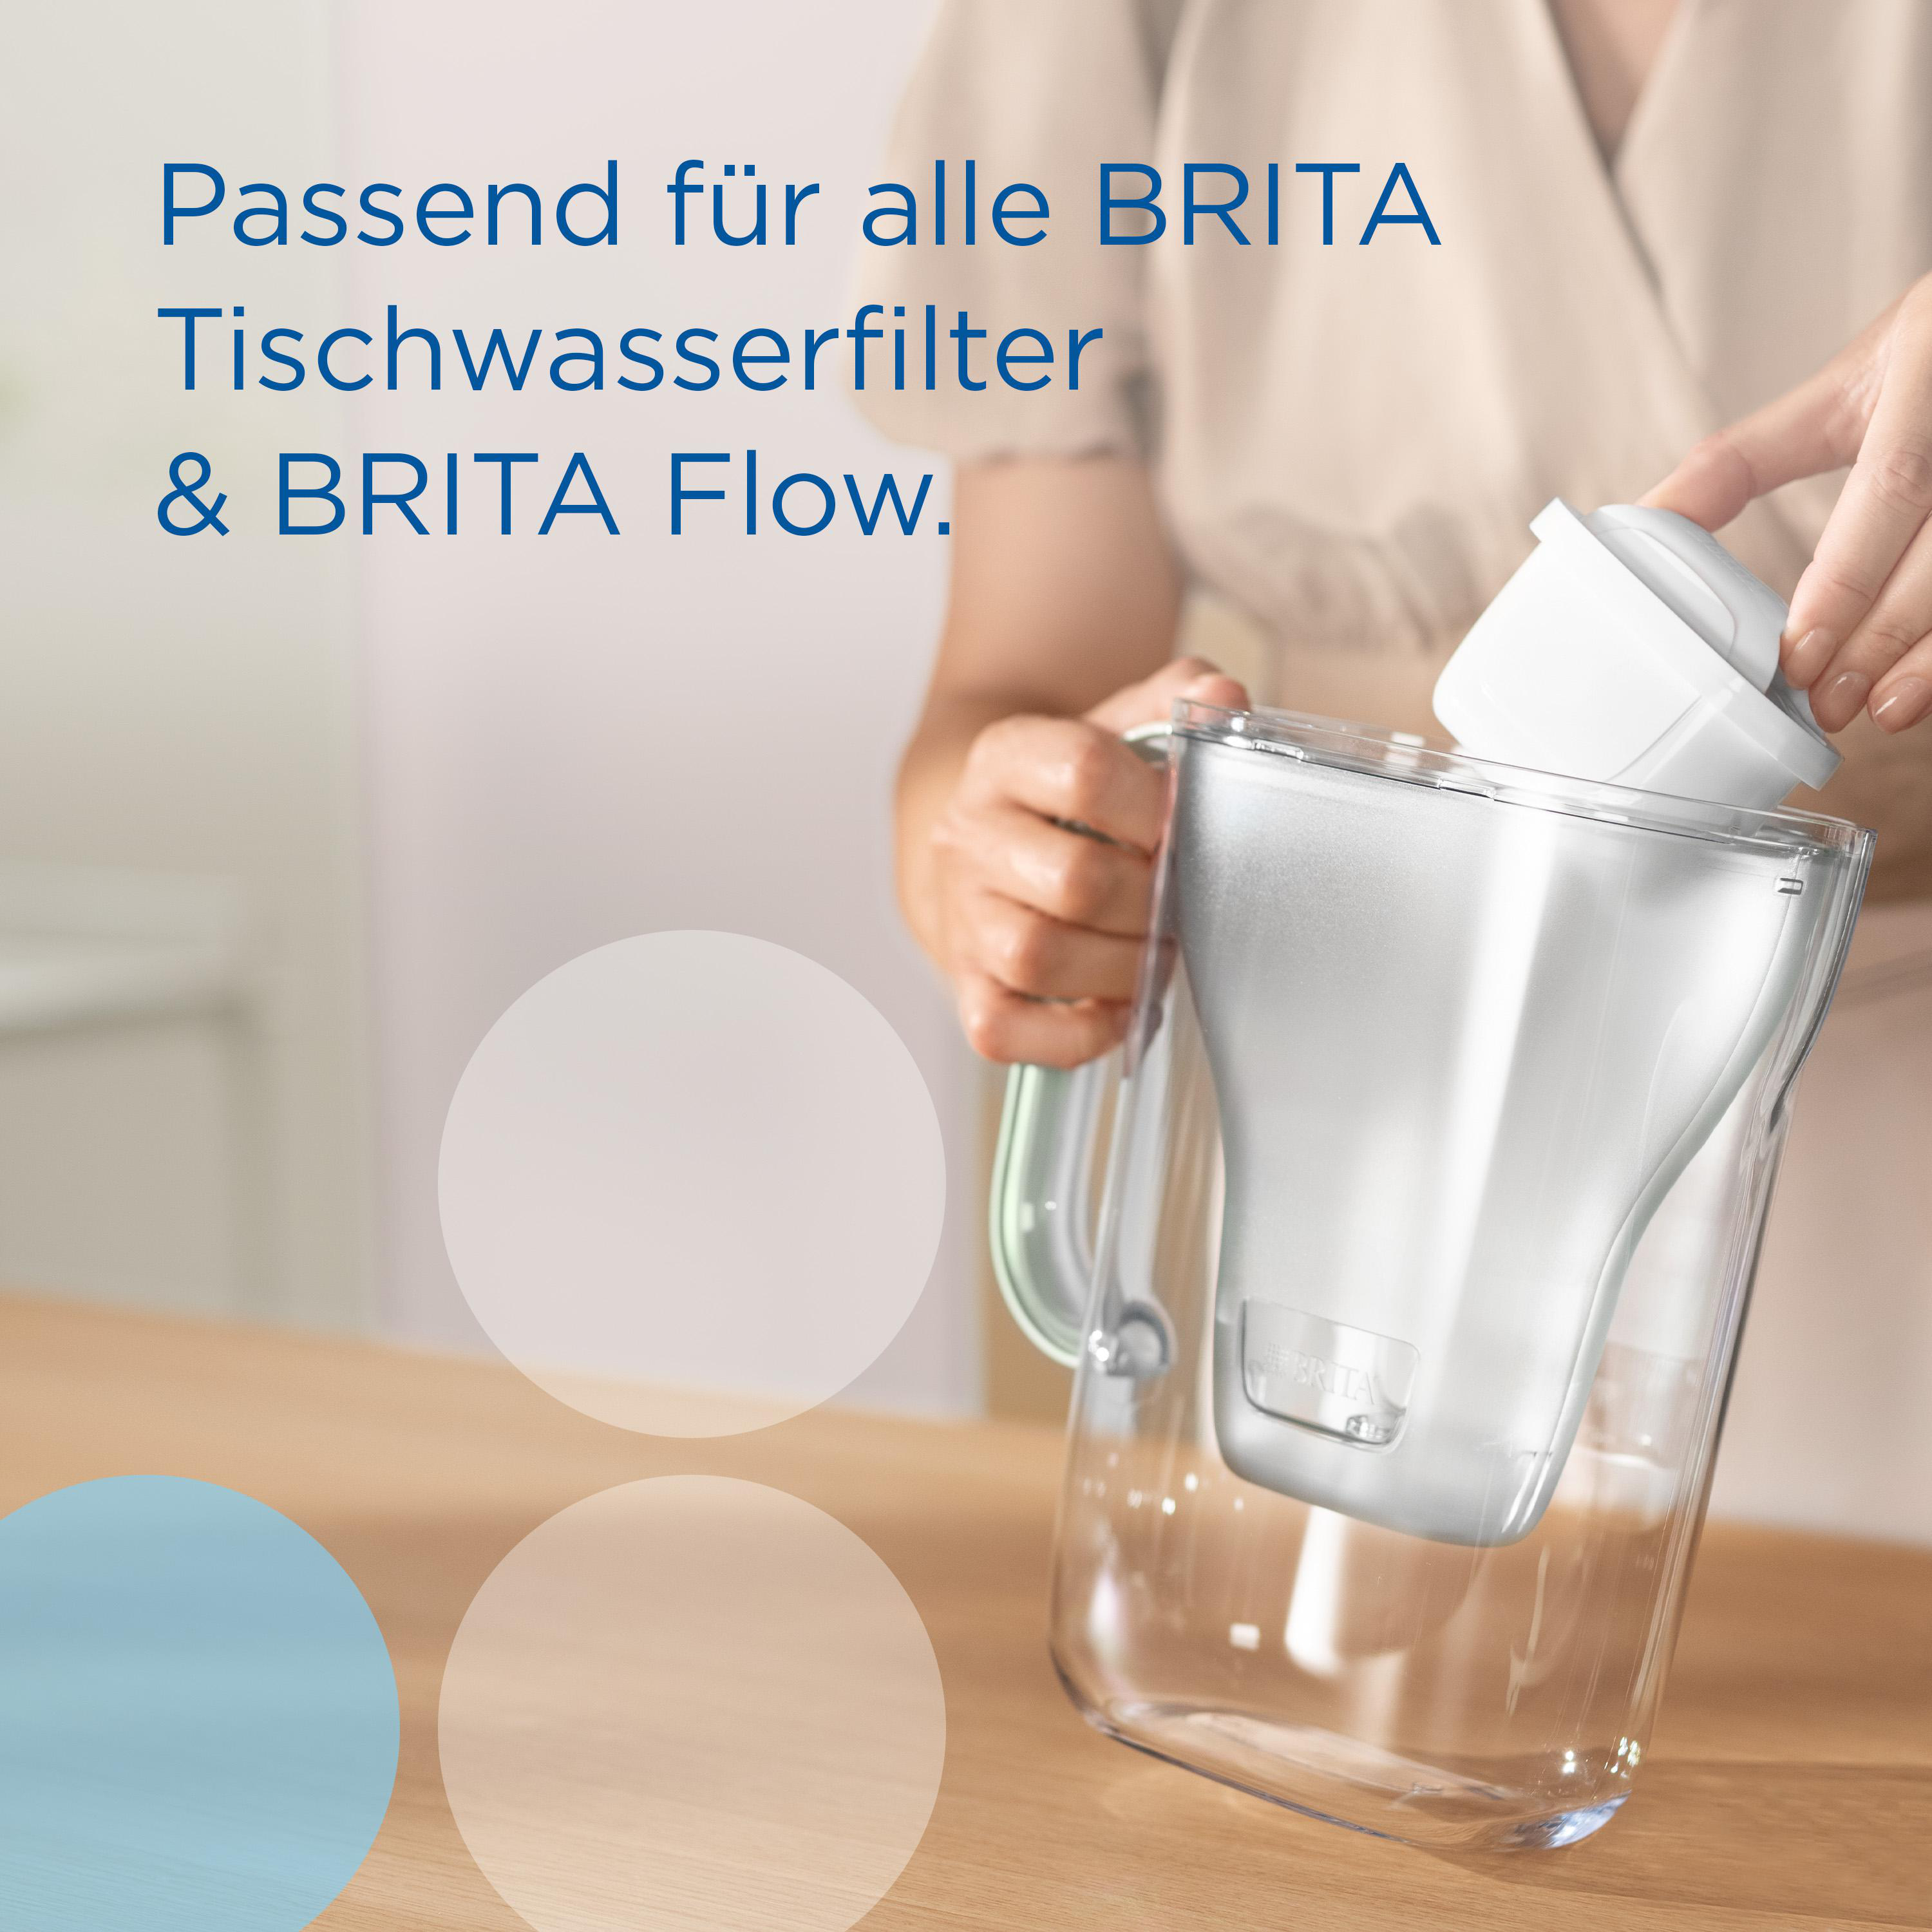 Filterkartusche Pack6 MAXTRA PRO Extra Kalkschutz BRITA